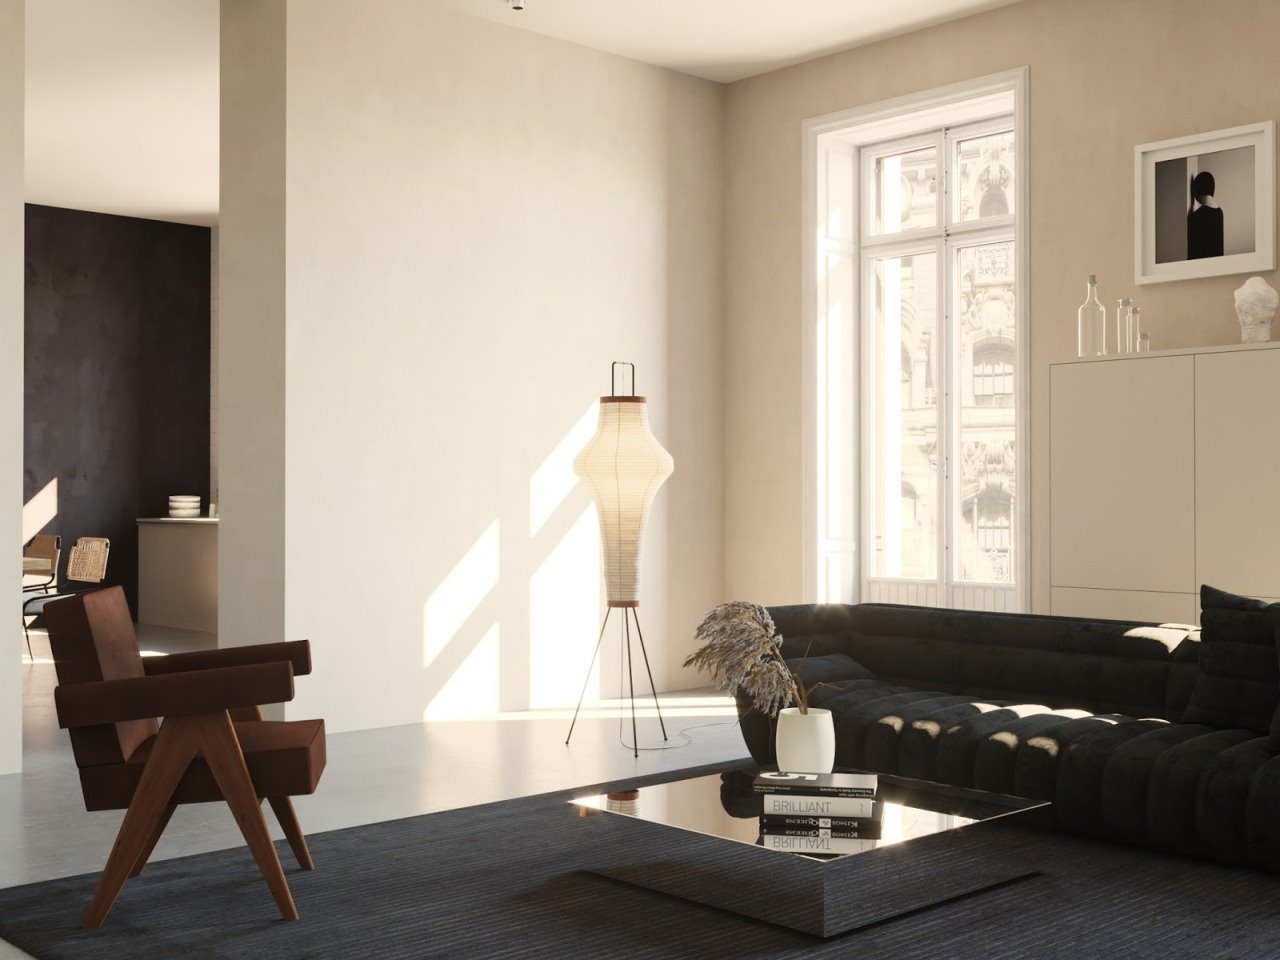 Salon de una casa moderna con butaca diseñada por Pierre Jeanneret. Silla Capitol Complex, diseño de Pierre Jeanneret que edita Cassina